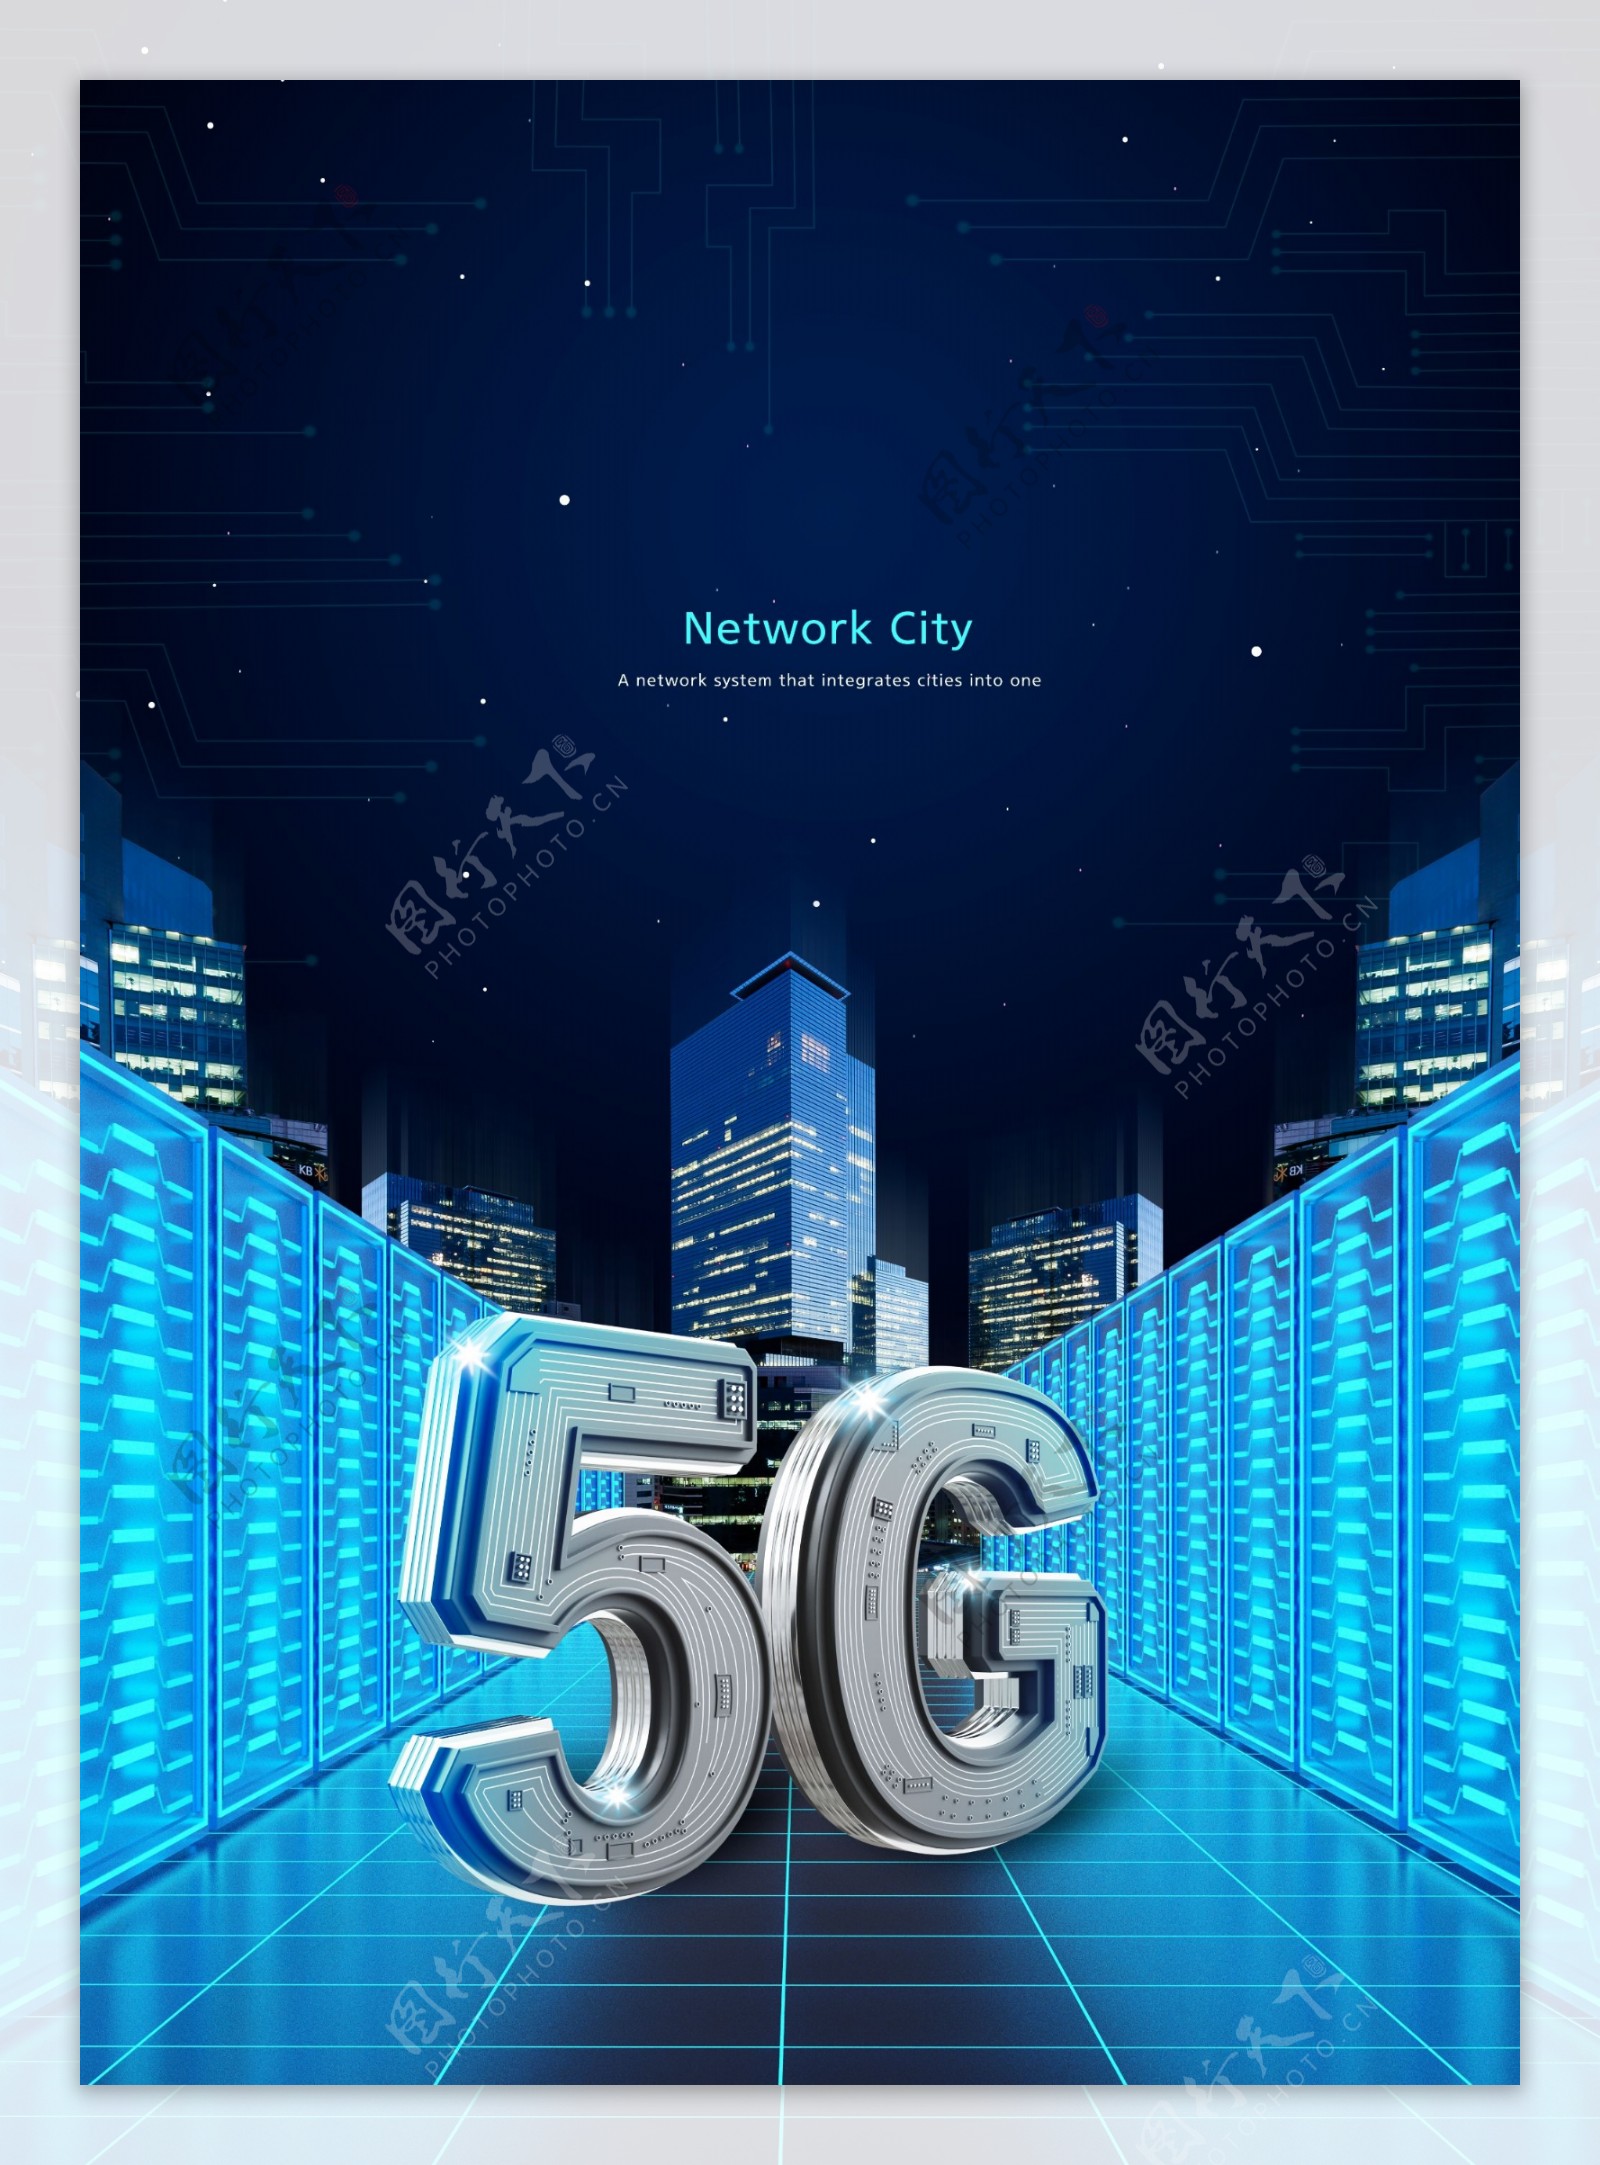 科技通讯5G海报